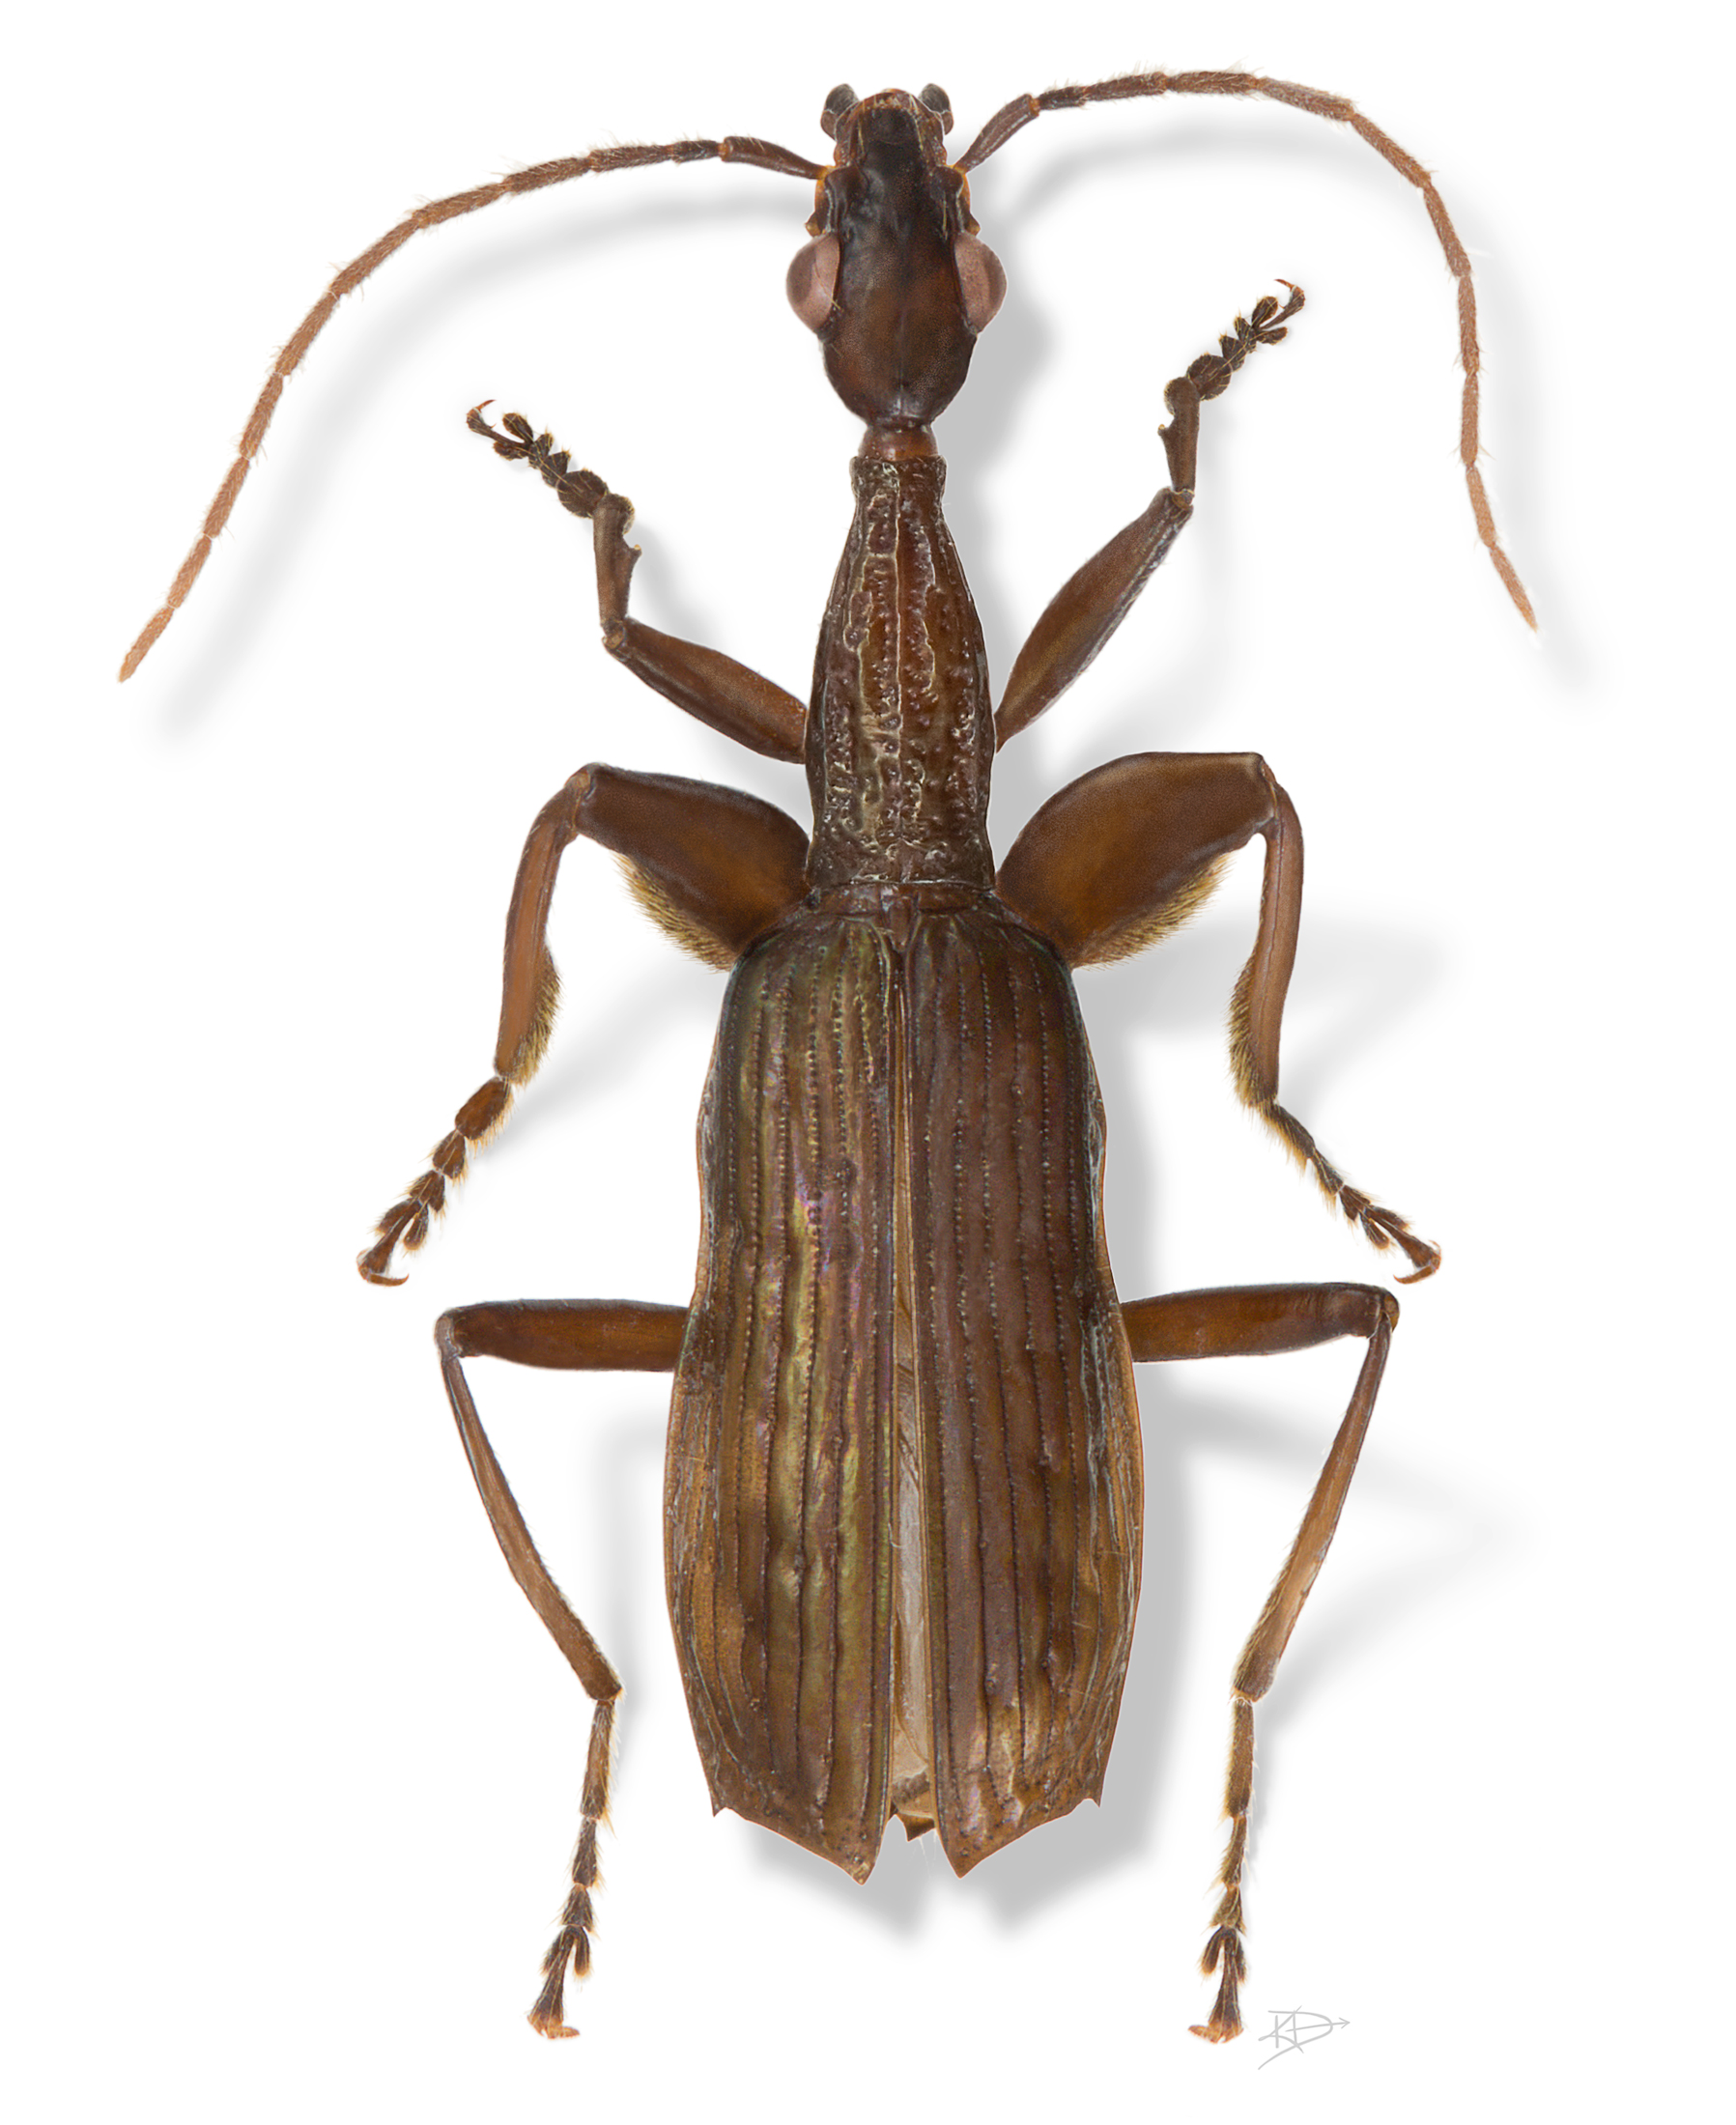 Agra schwartzeneggeri (Coleoptera: Carabidae)